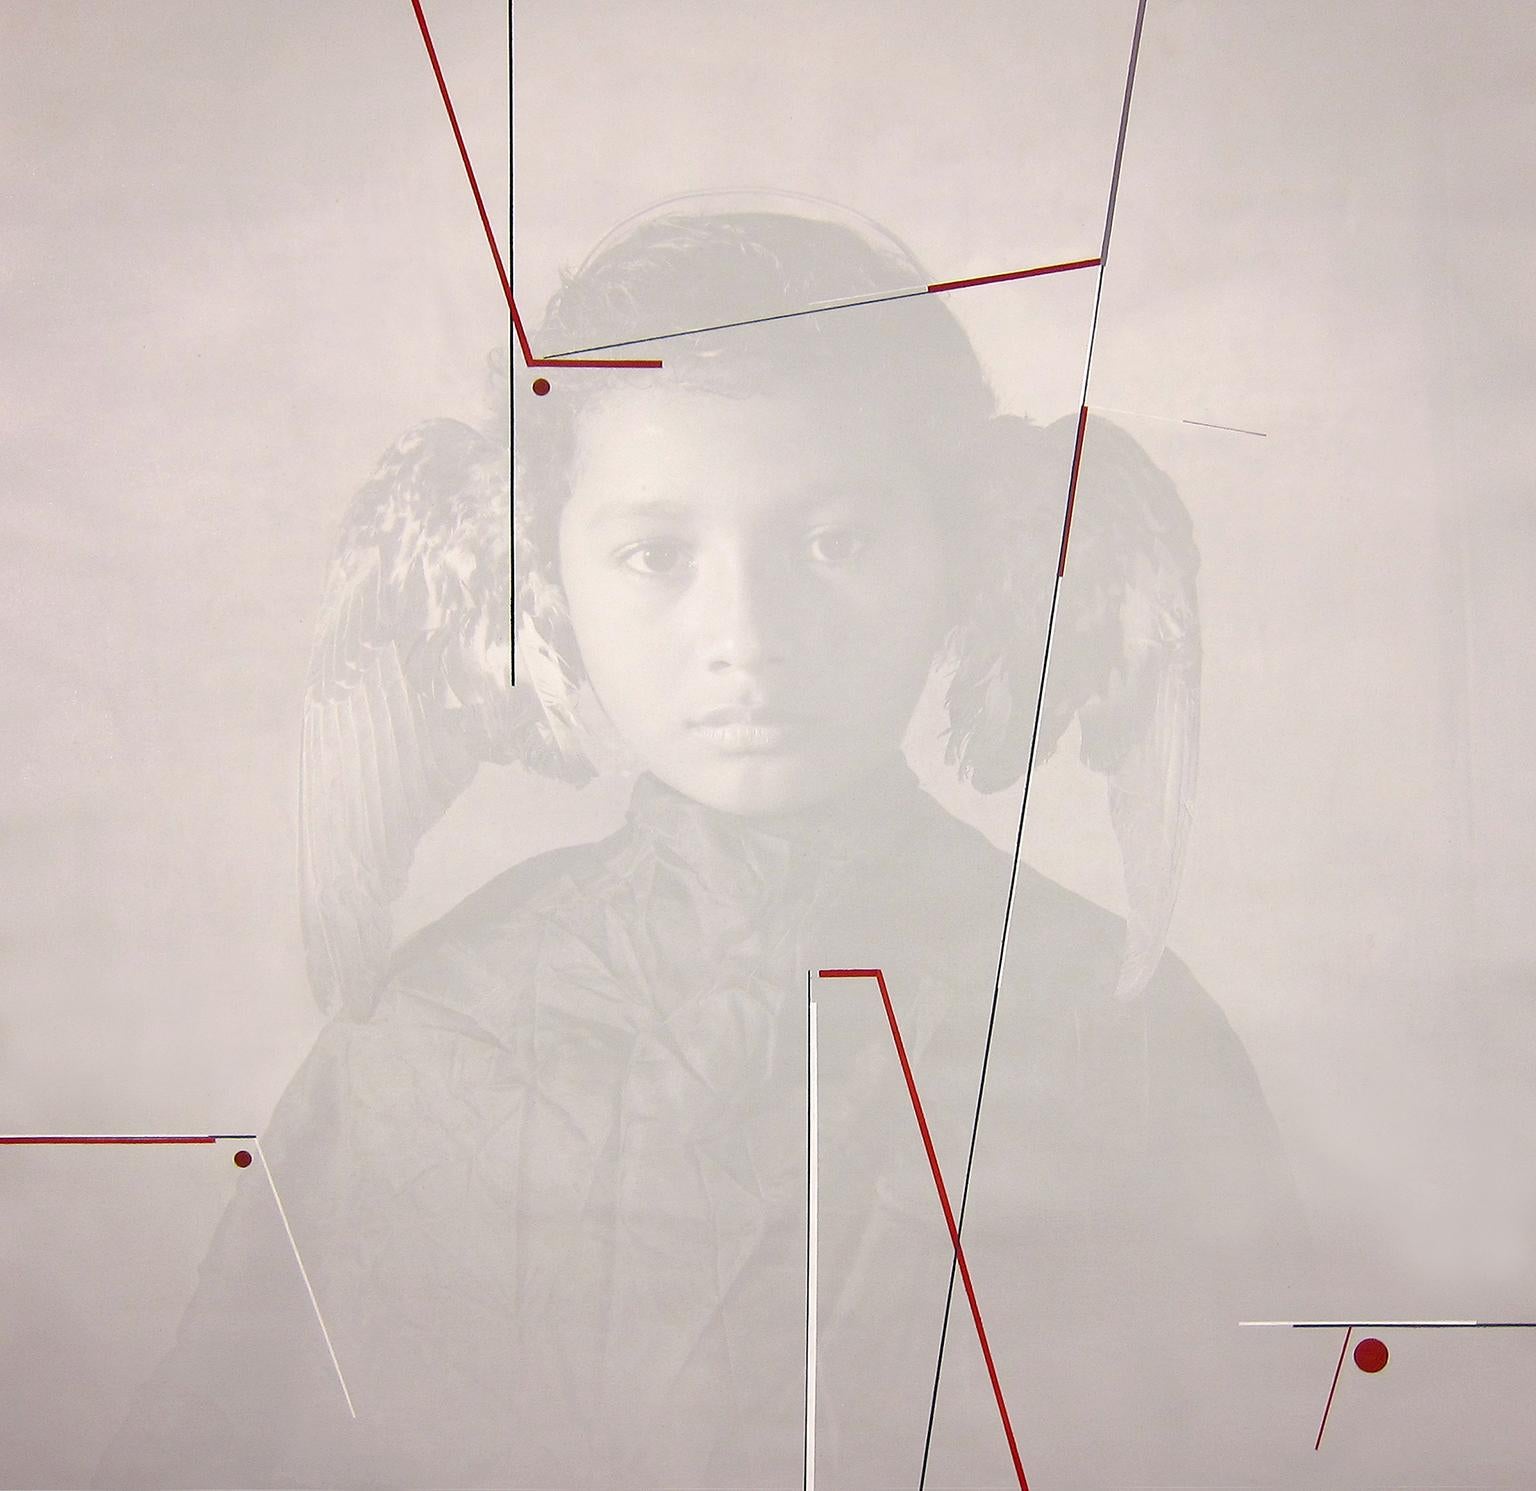 Luis Gonzalez Palma Portrait Photograph - "Mobius - Joven Alado", gray portrait boy with wings photograph acrylic paint